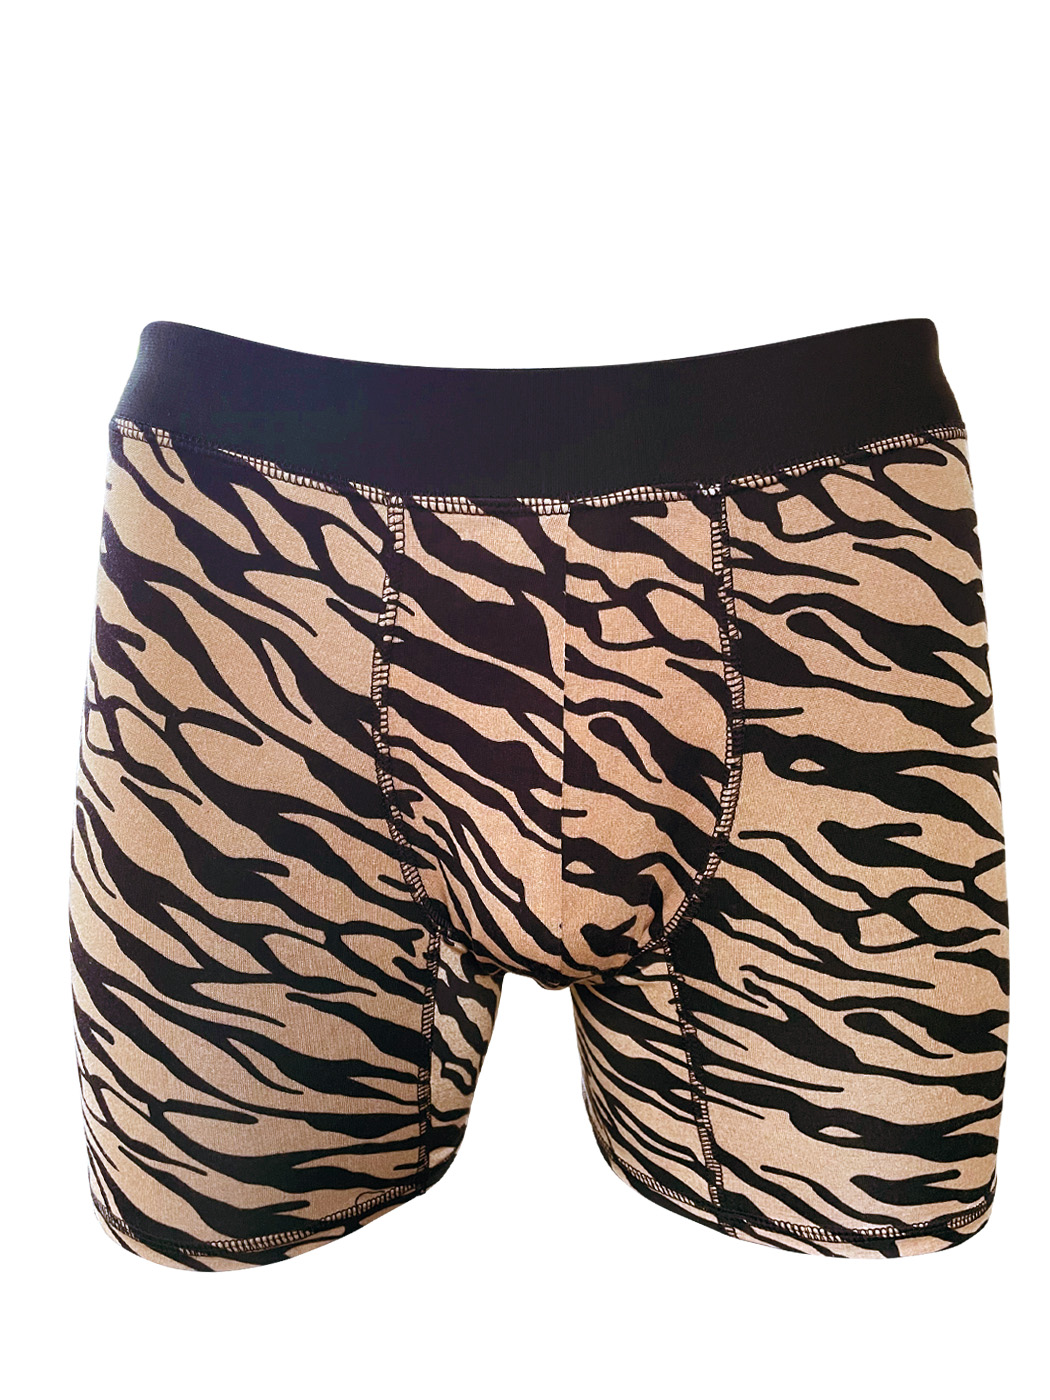 Brown Tiger - Kockey Underwear